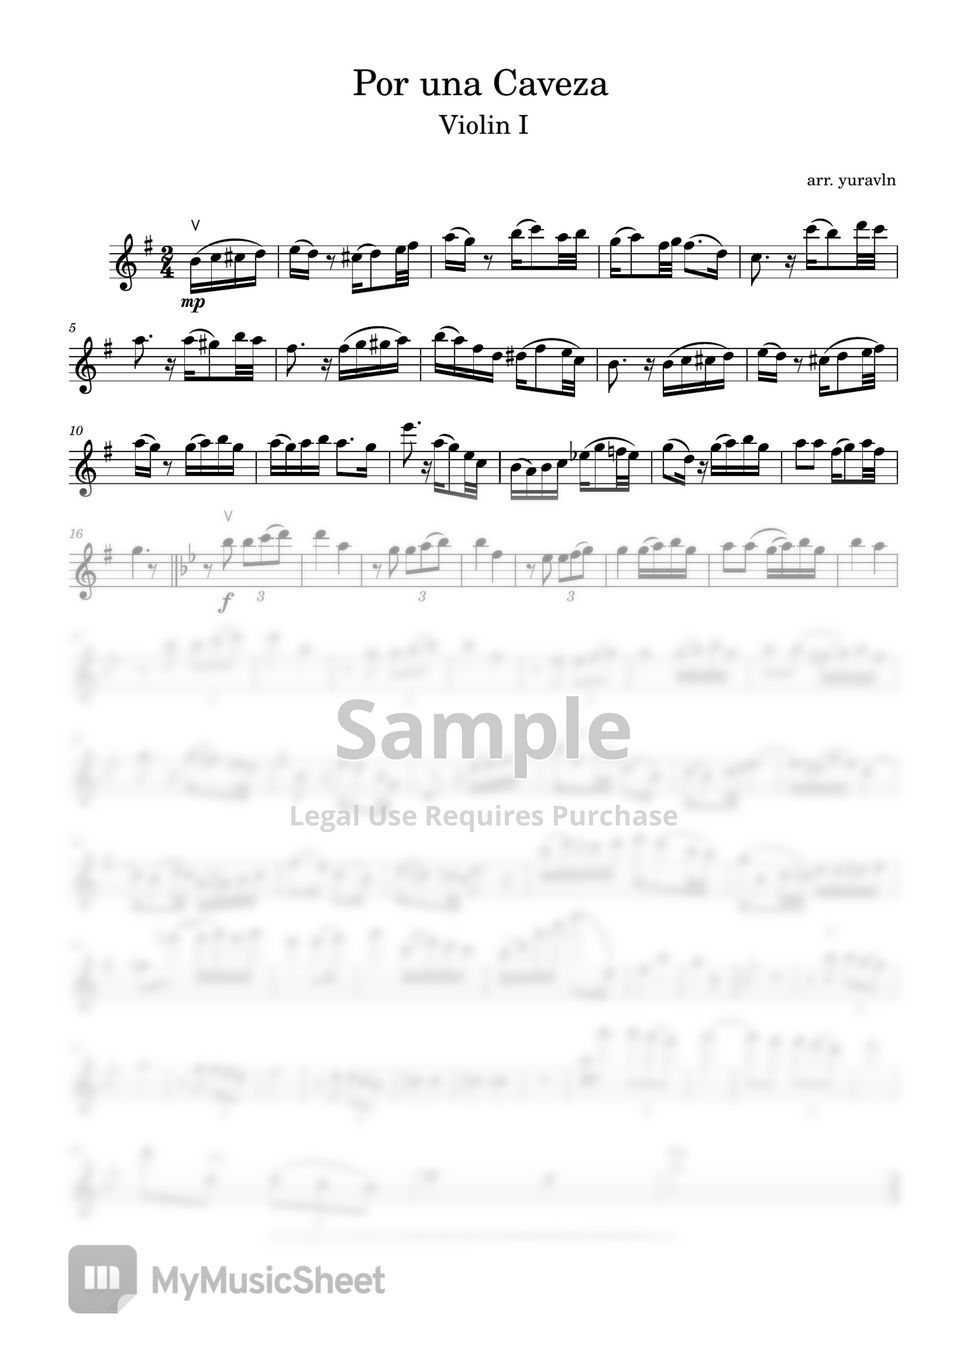 Carlos Gardel - Por una Cabeza (Sheet music + Piano Instrumental) by yuravln